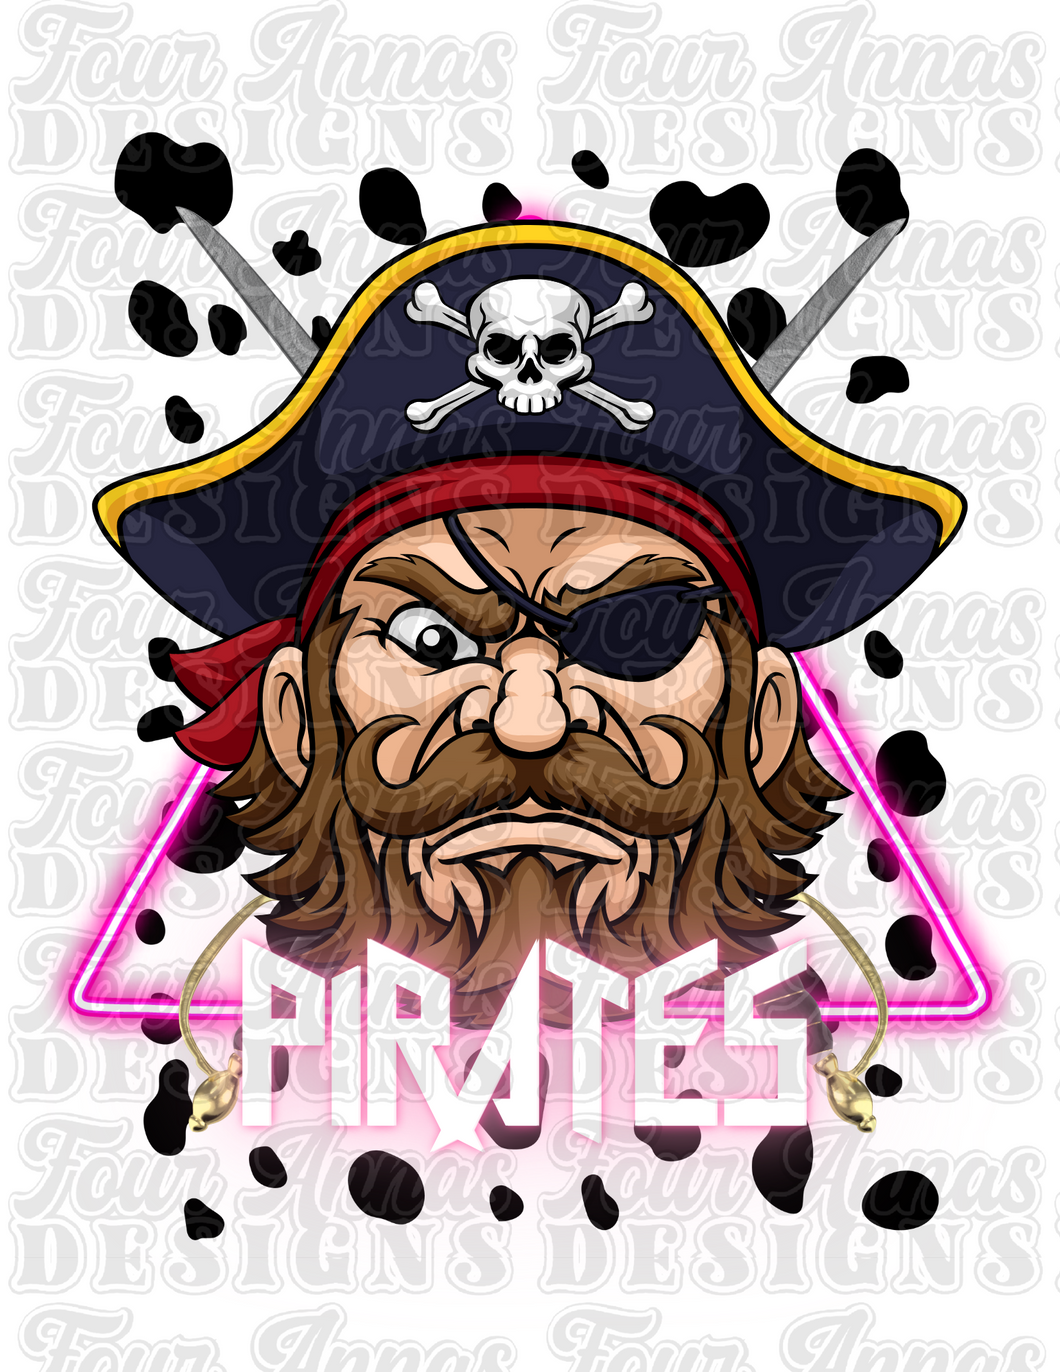 Pirates mascot